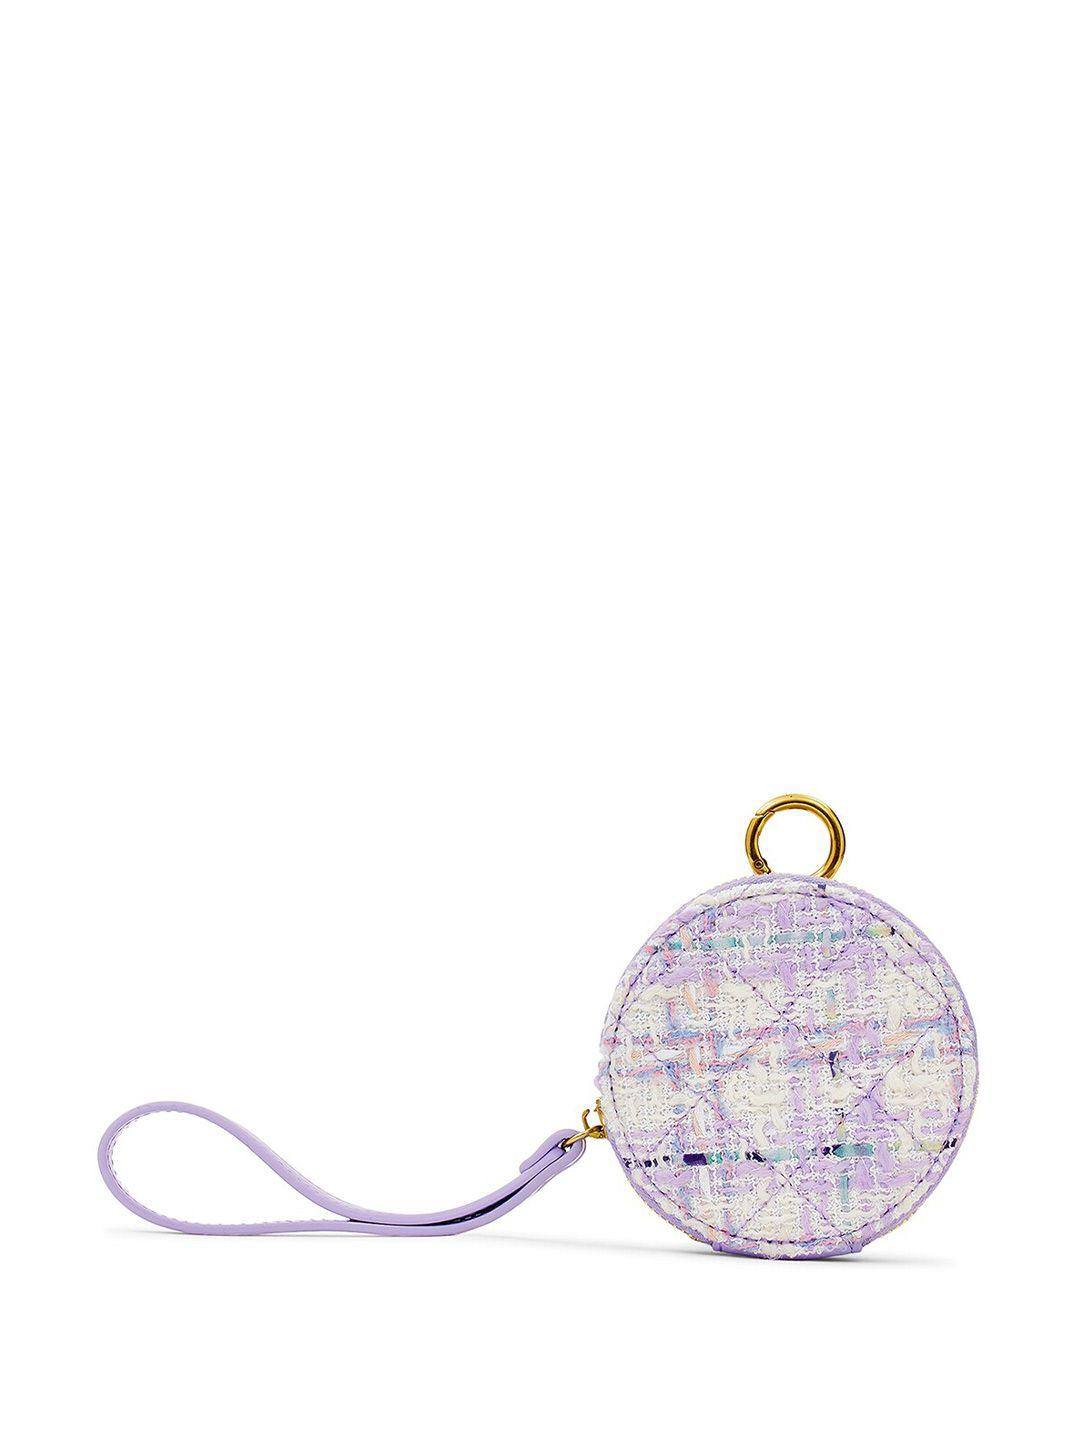 miraggio textured round-shaped lizzie coin purse